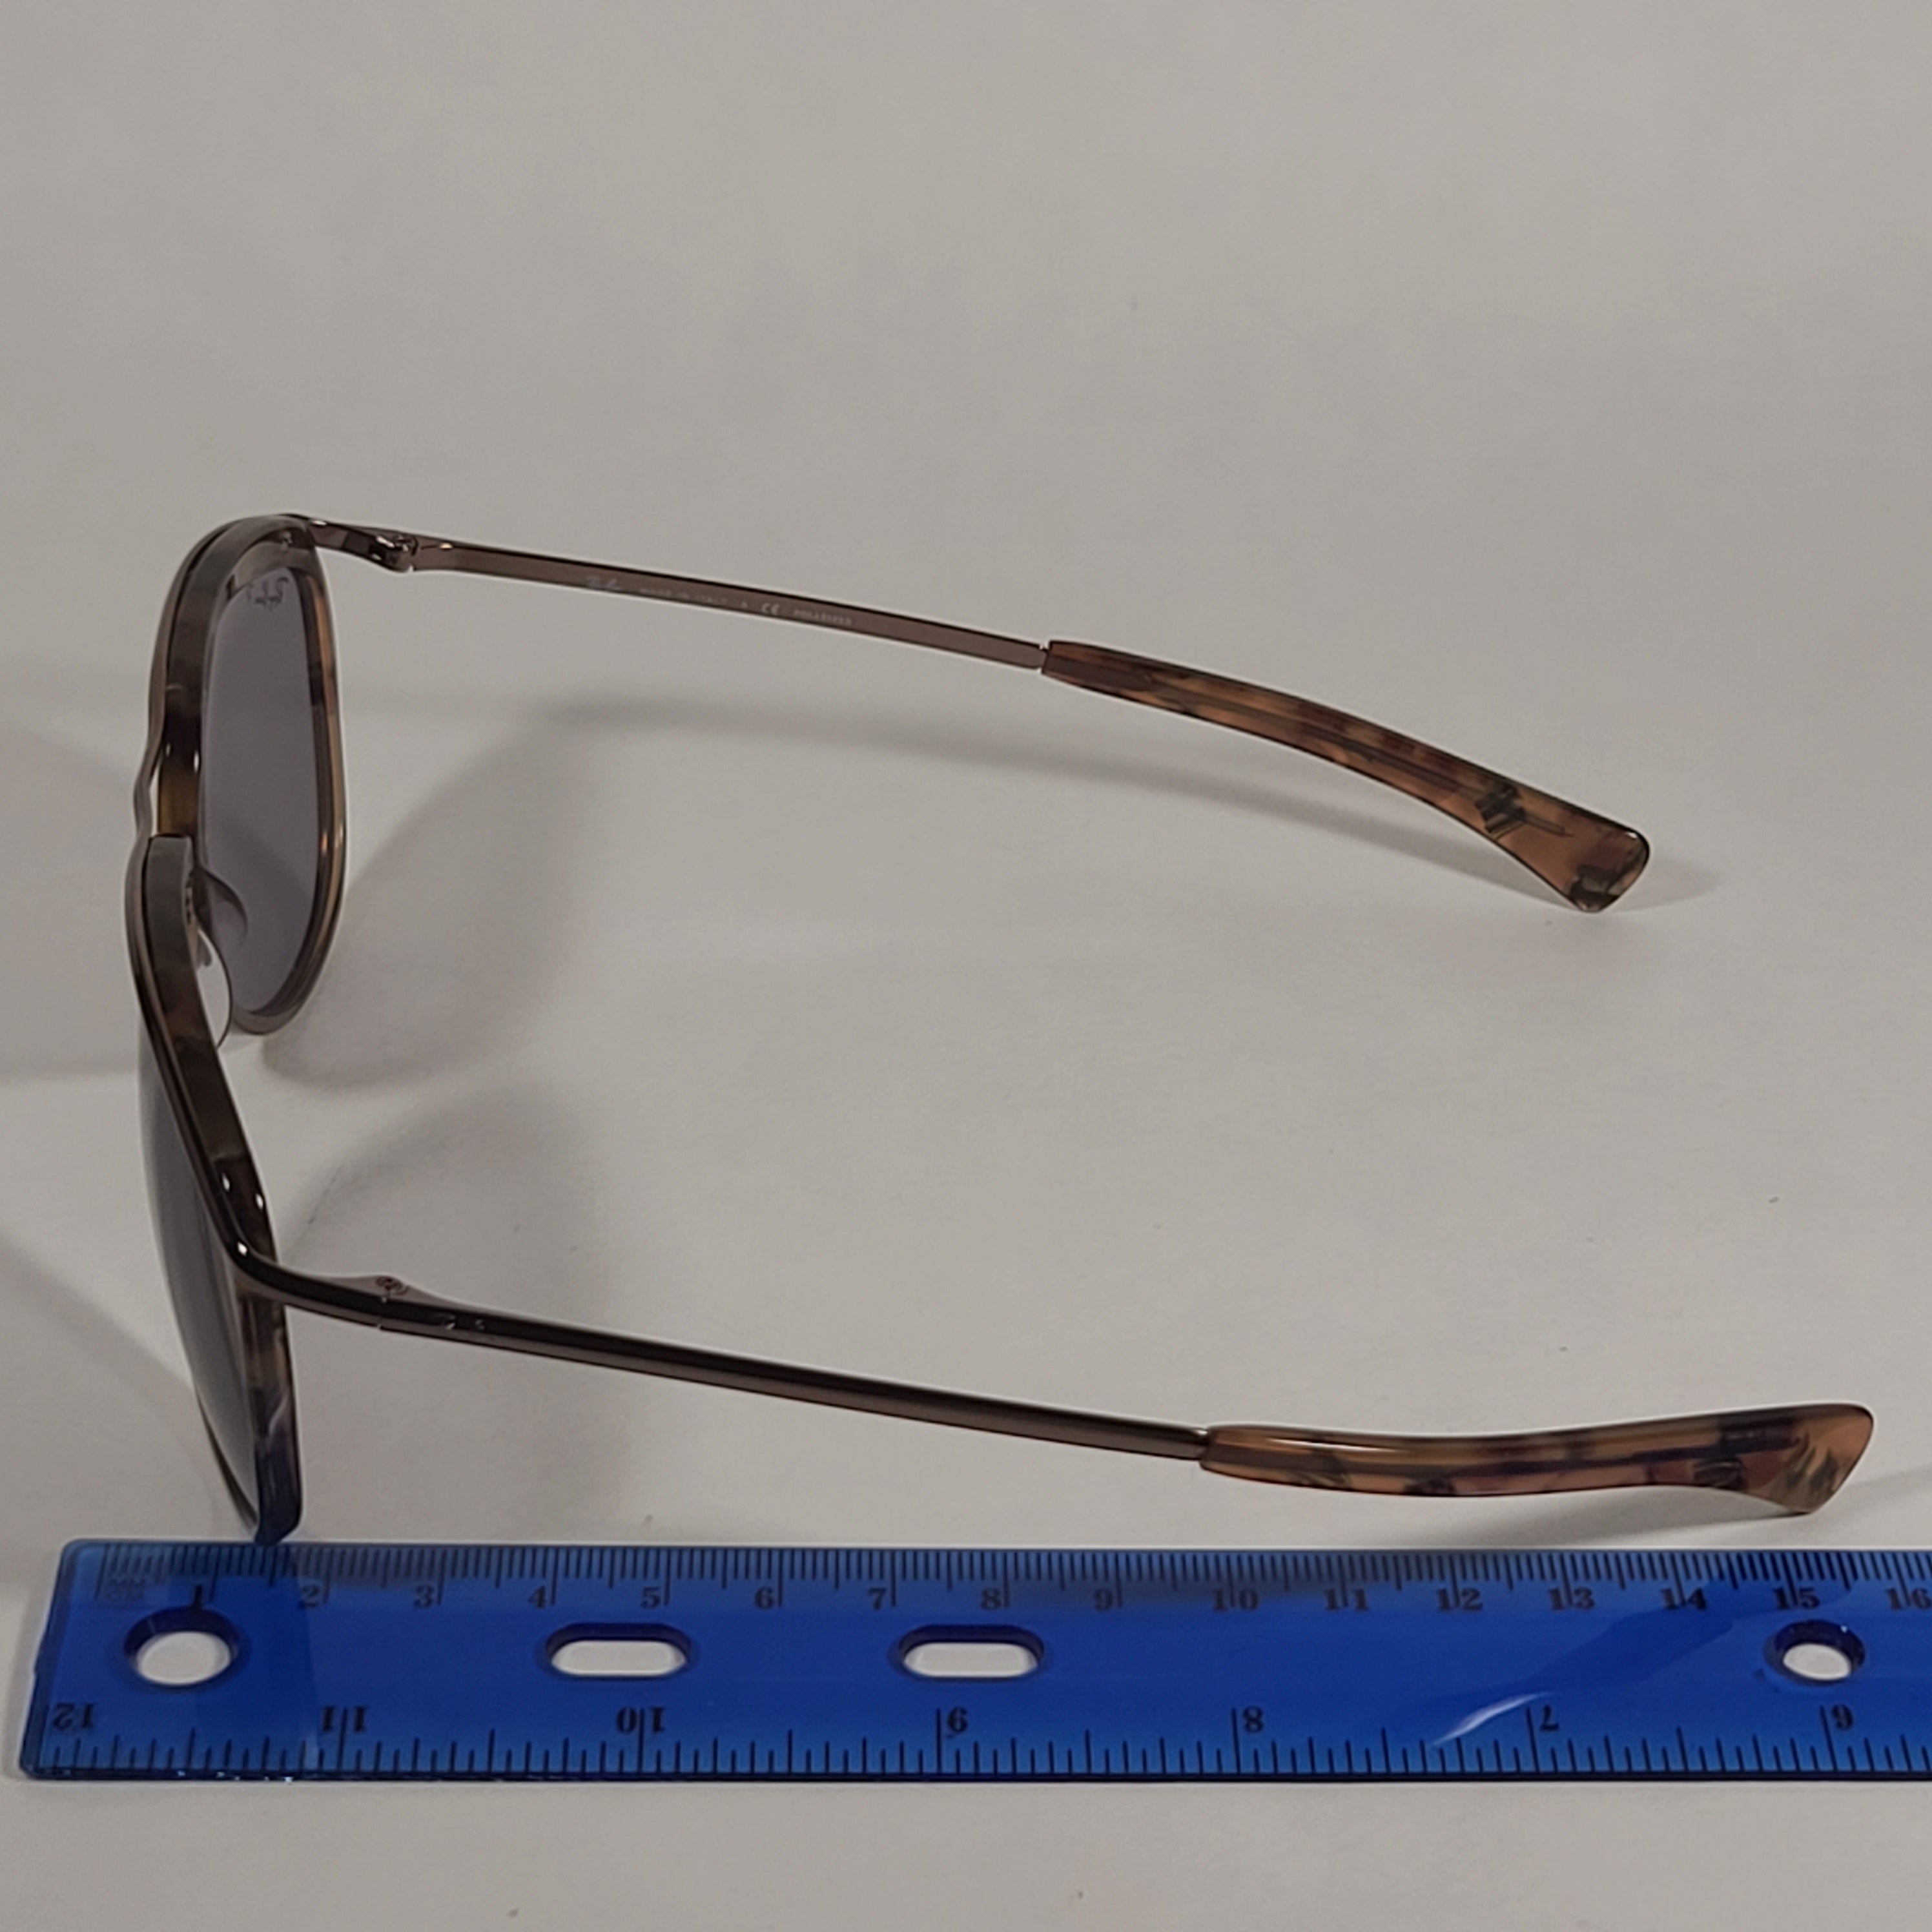 Ray Ban Olympian II Bausch & Lomb rare sunglasses - Gem